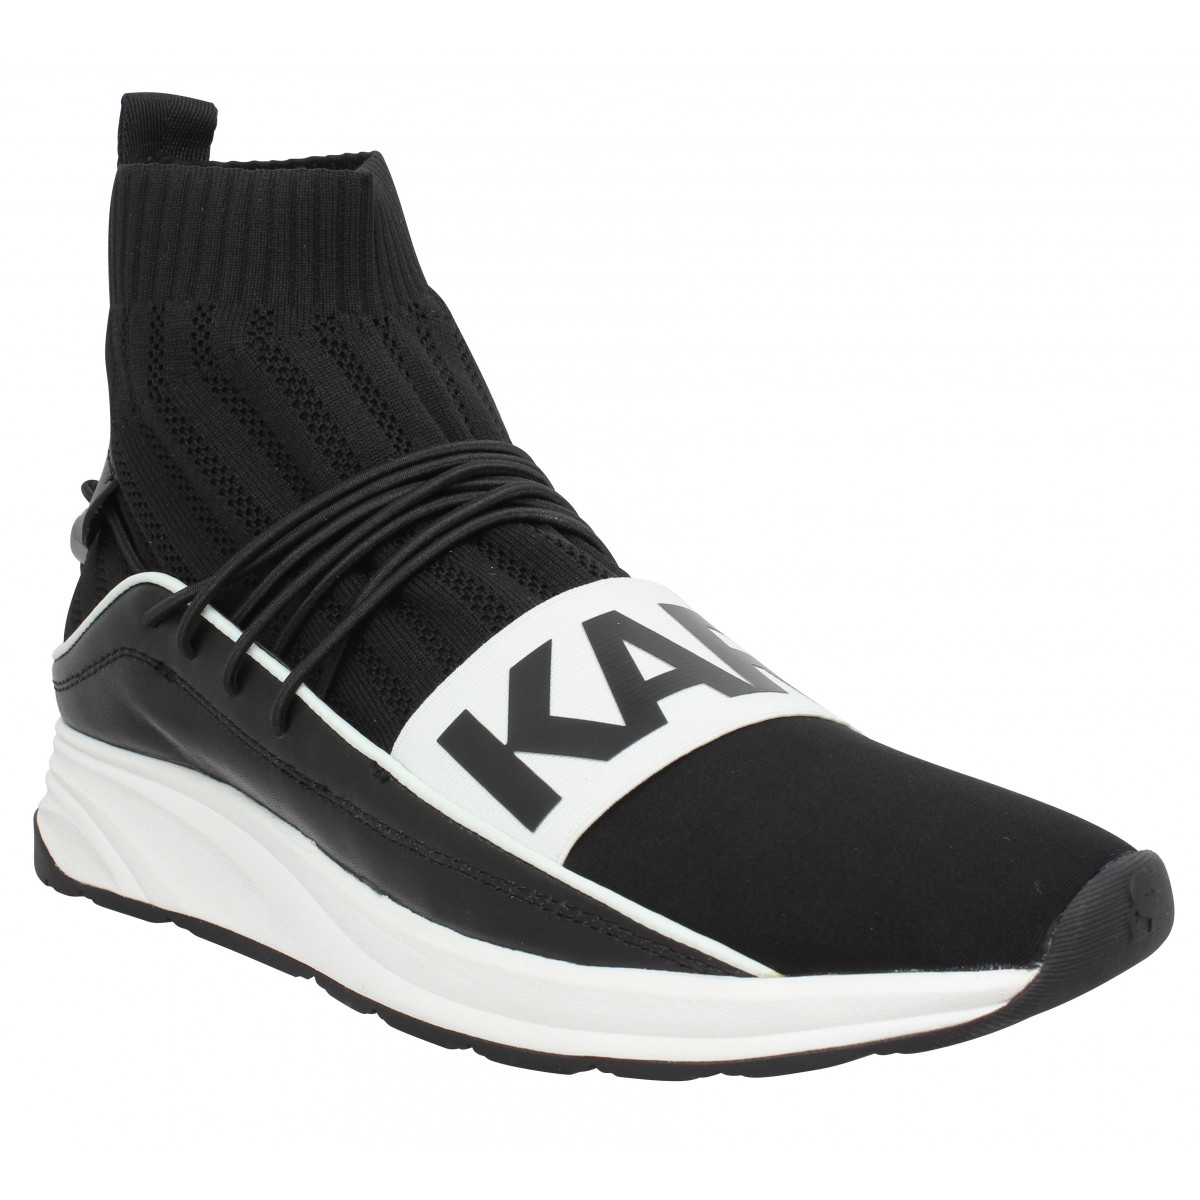 Sneakers Synthétique Karl Lagerfeld pour homme en coloris Noir Homme Chaussures Baskets Baskets basses 